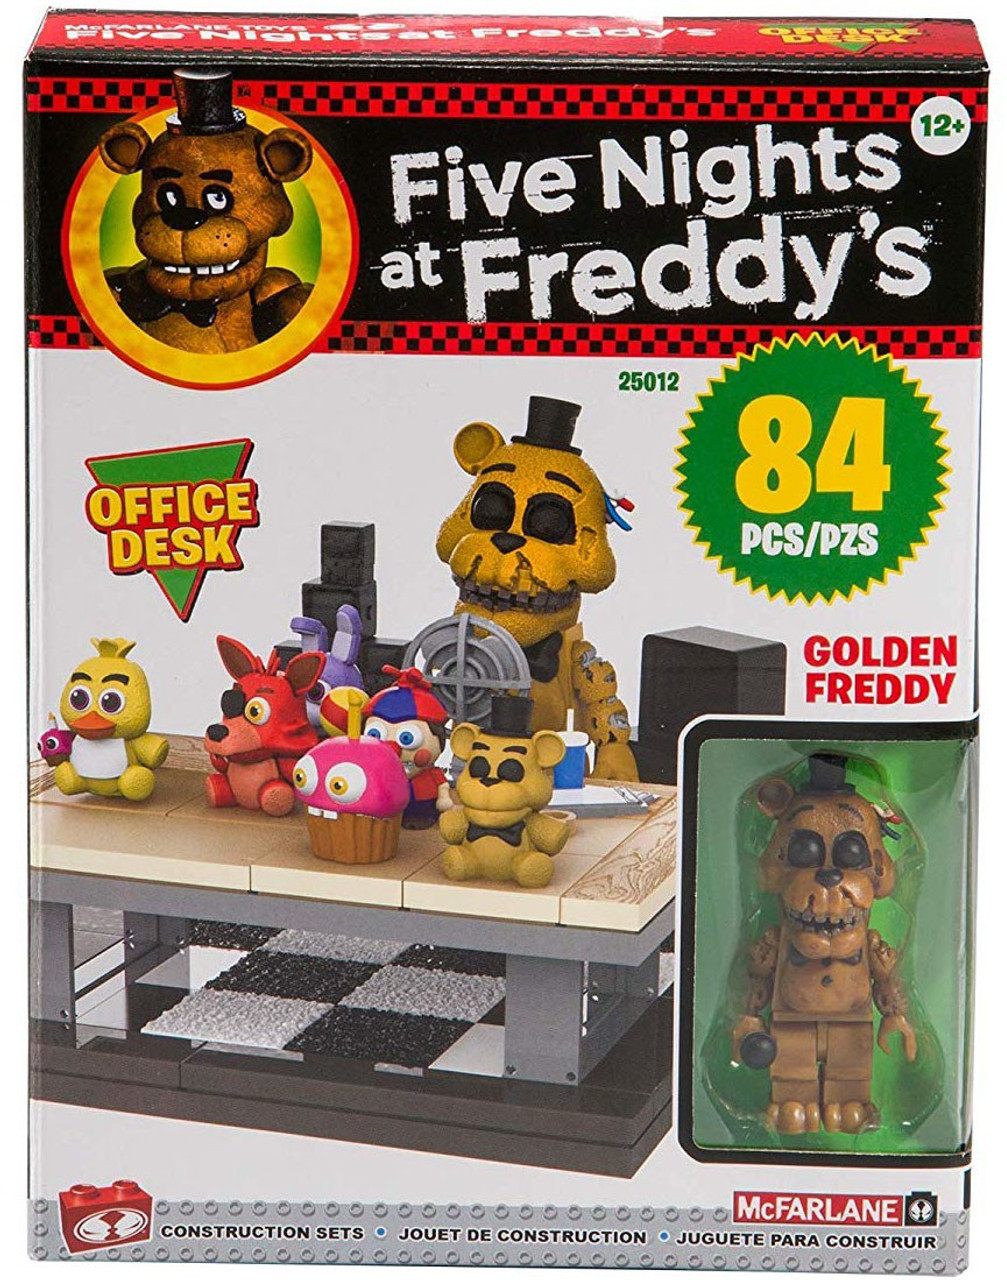 5 nights at freddy's lego set